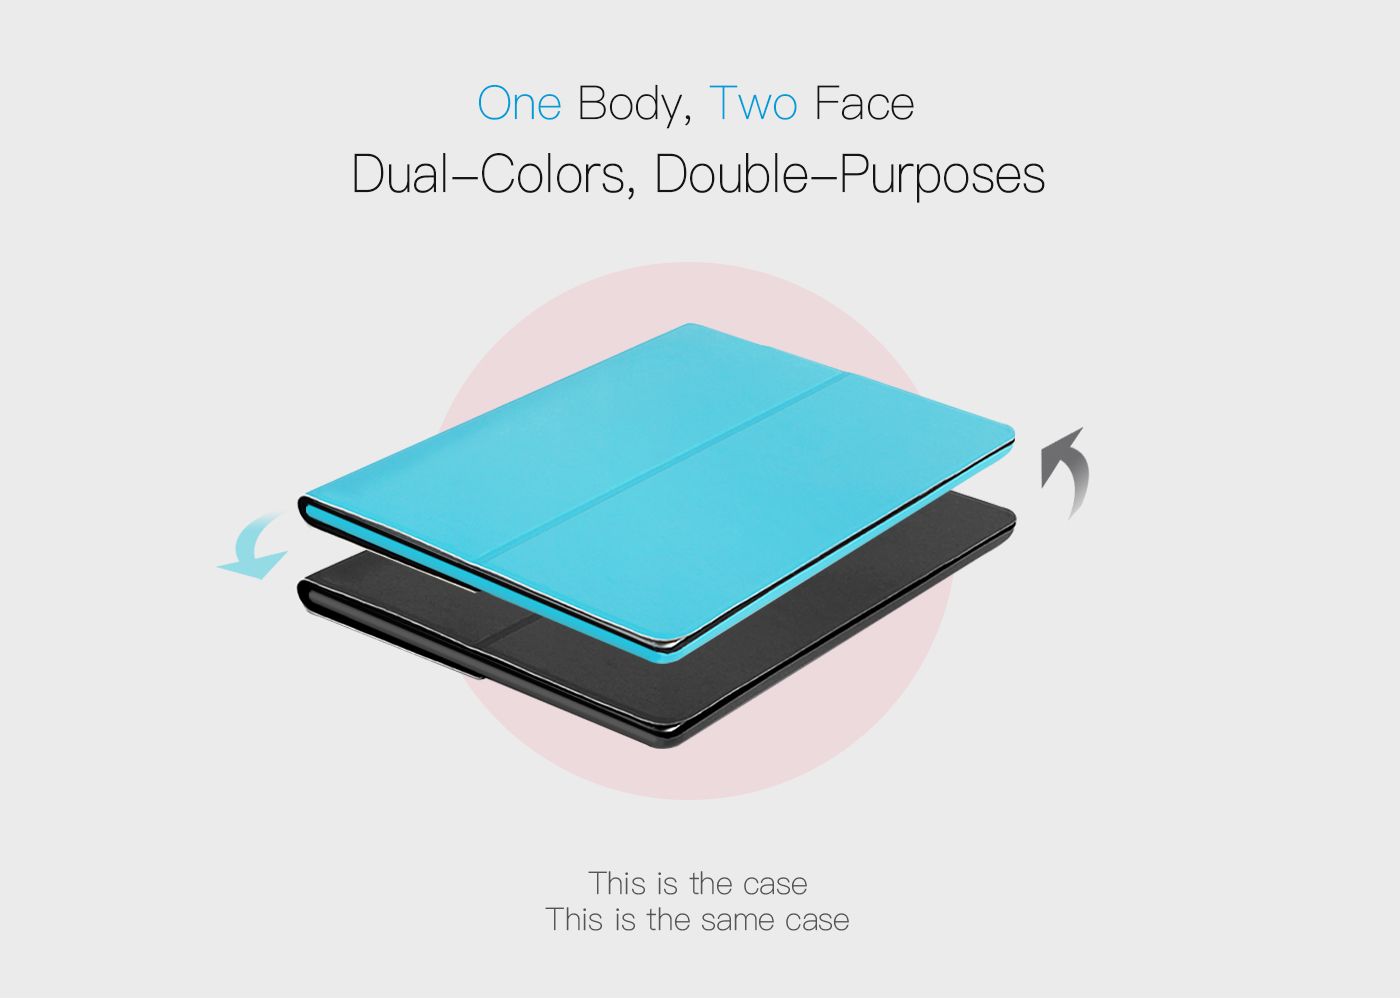 Chameleon Case for iPad(Blue)